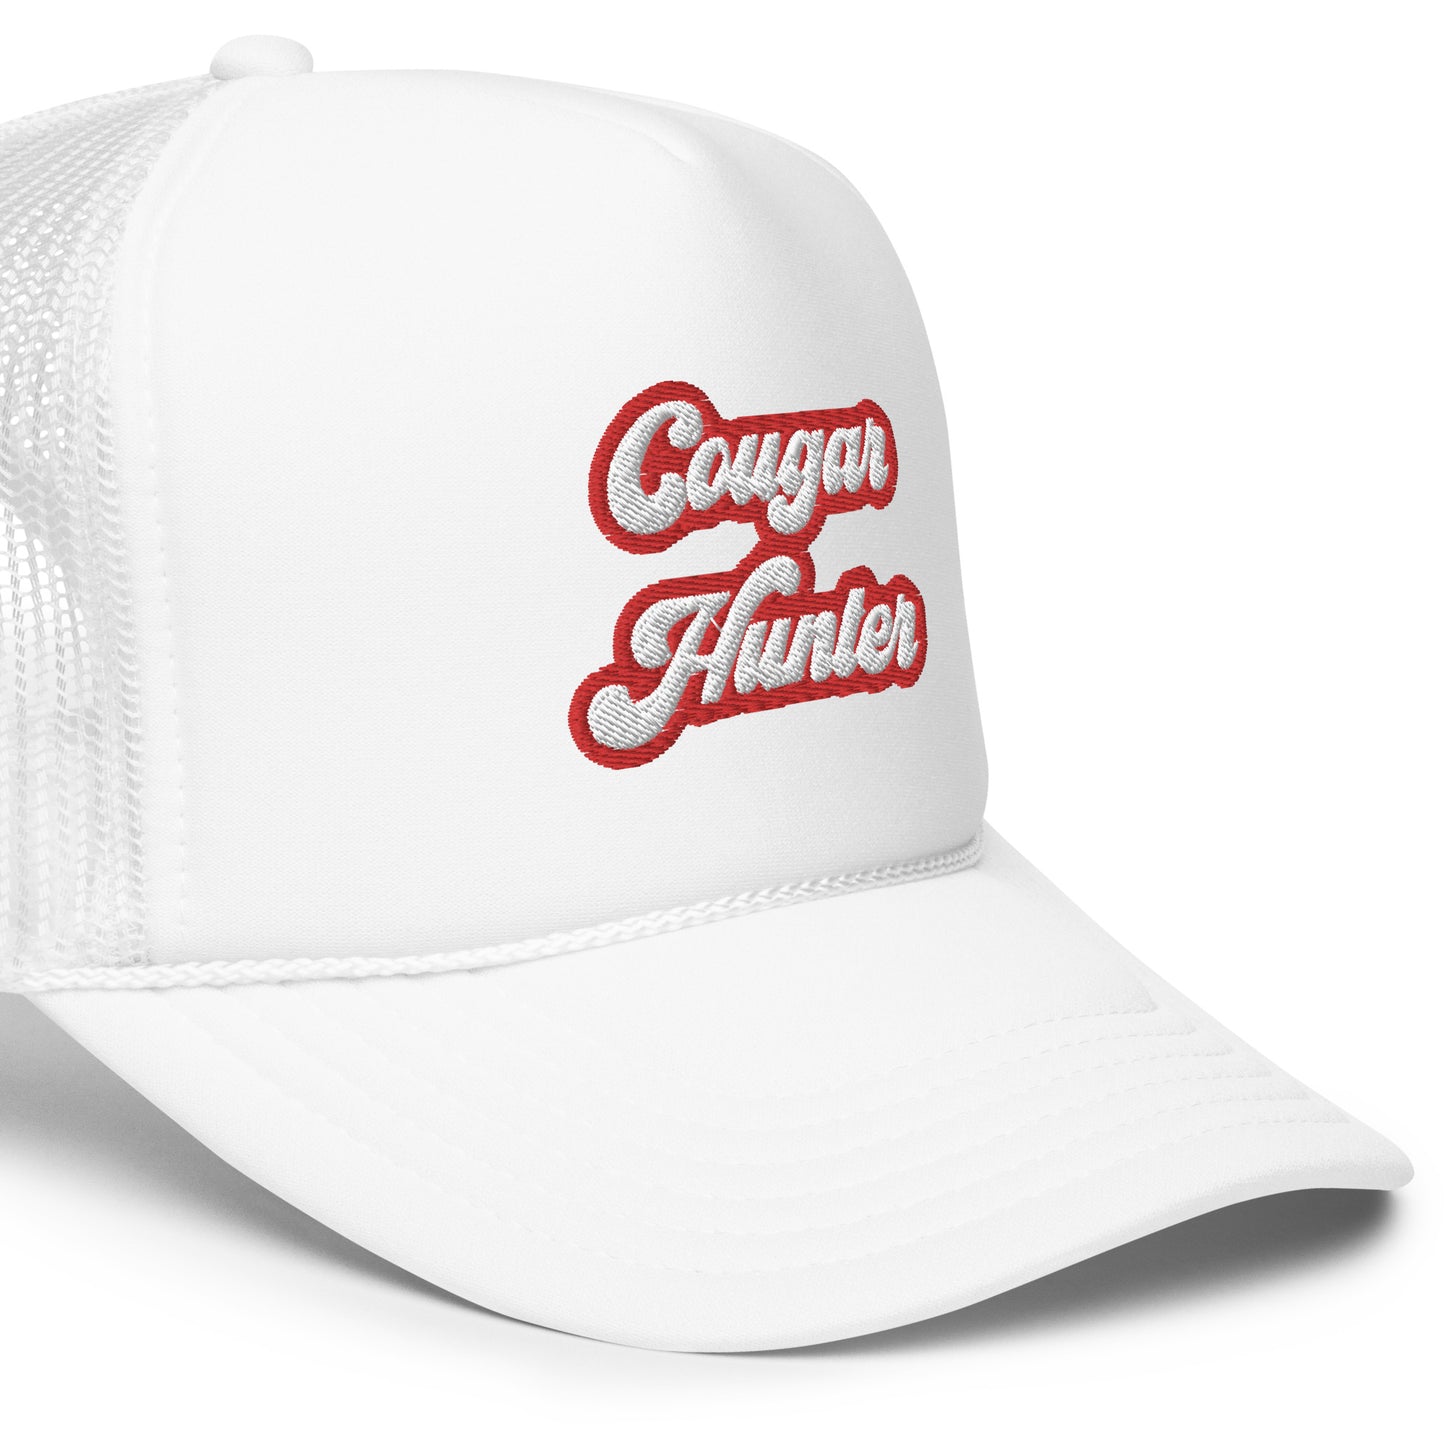 Cougar Hunter Trucker Hat